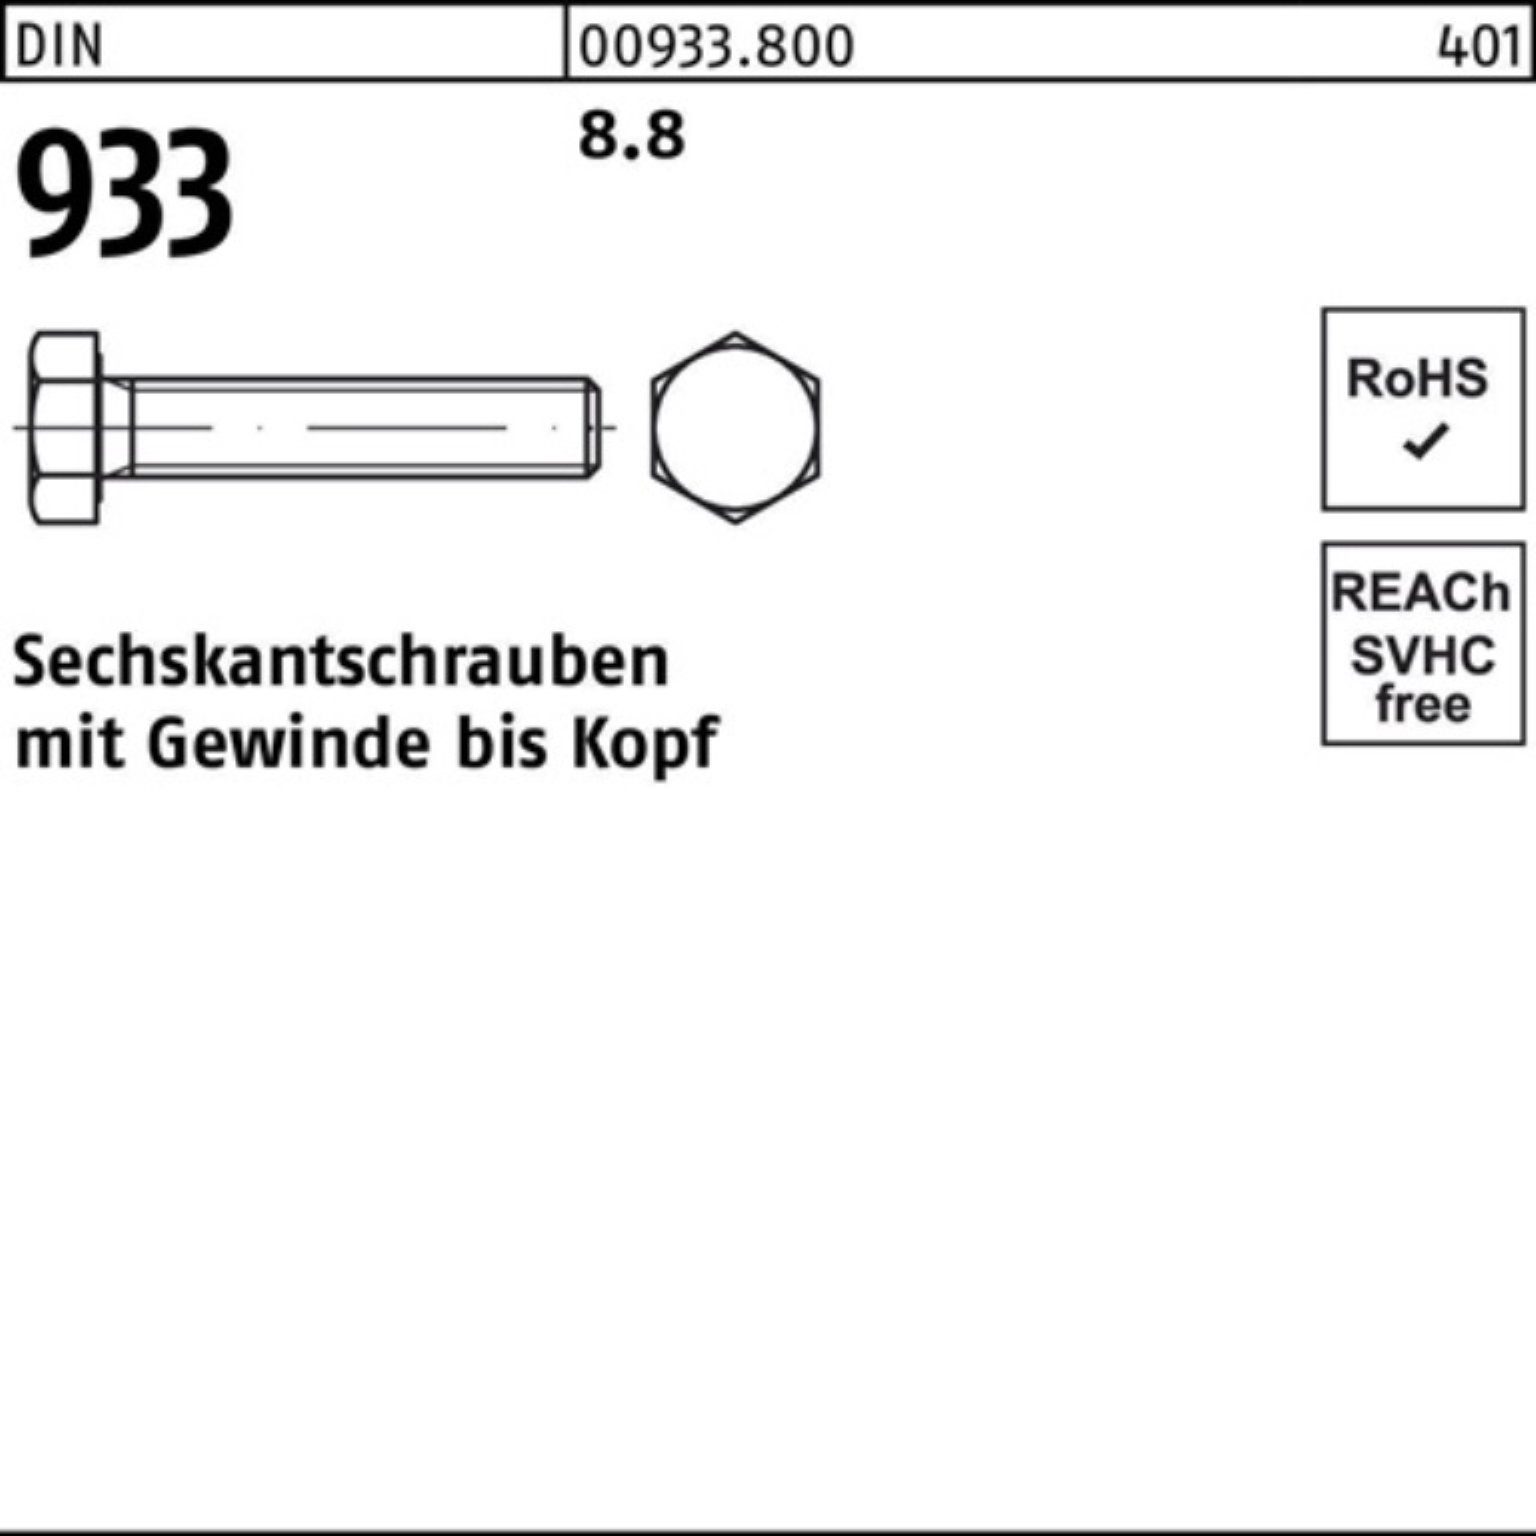 50 Reyher Sechskantschraube 933 Sechskantschraube 933 DIN Stück M10x DIN 100er Pack VG 8.8 160